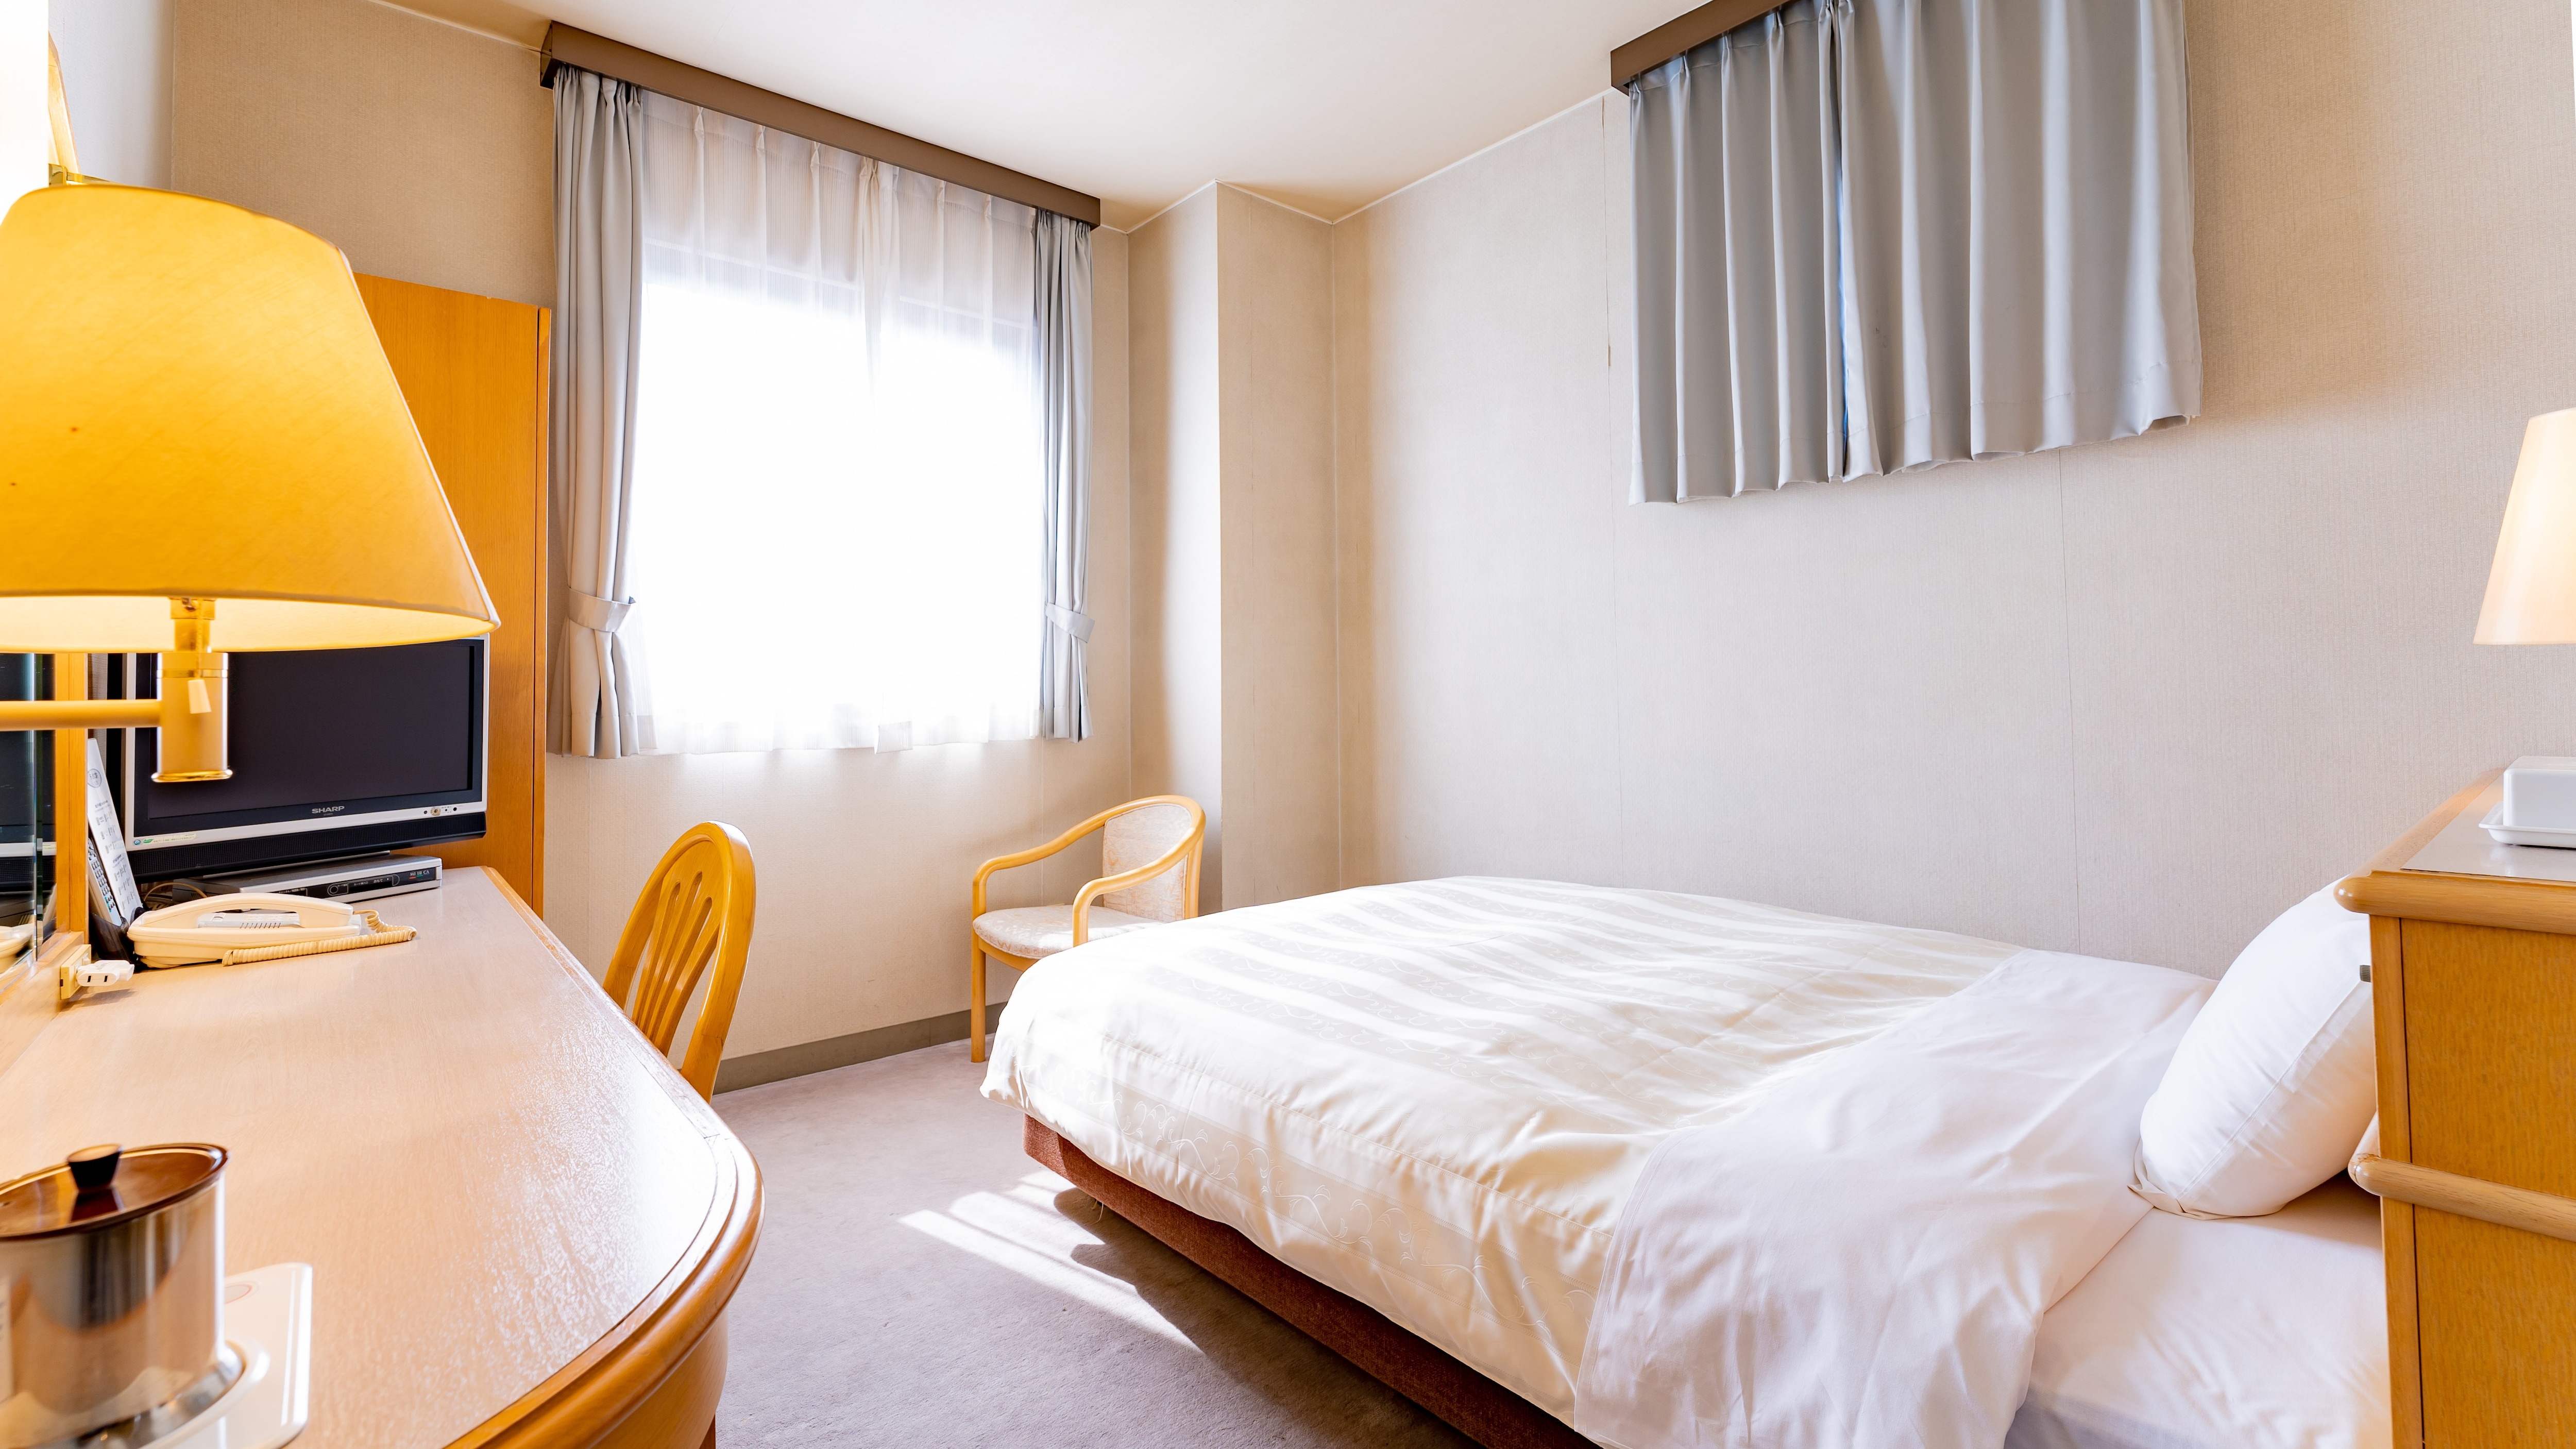 싱글 룸 　 　 　 침대 크기는 135cm 방의 넓이는 18㎡ 가습 공기 청정기